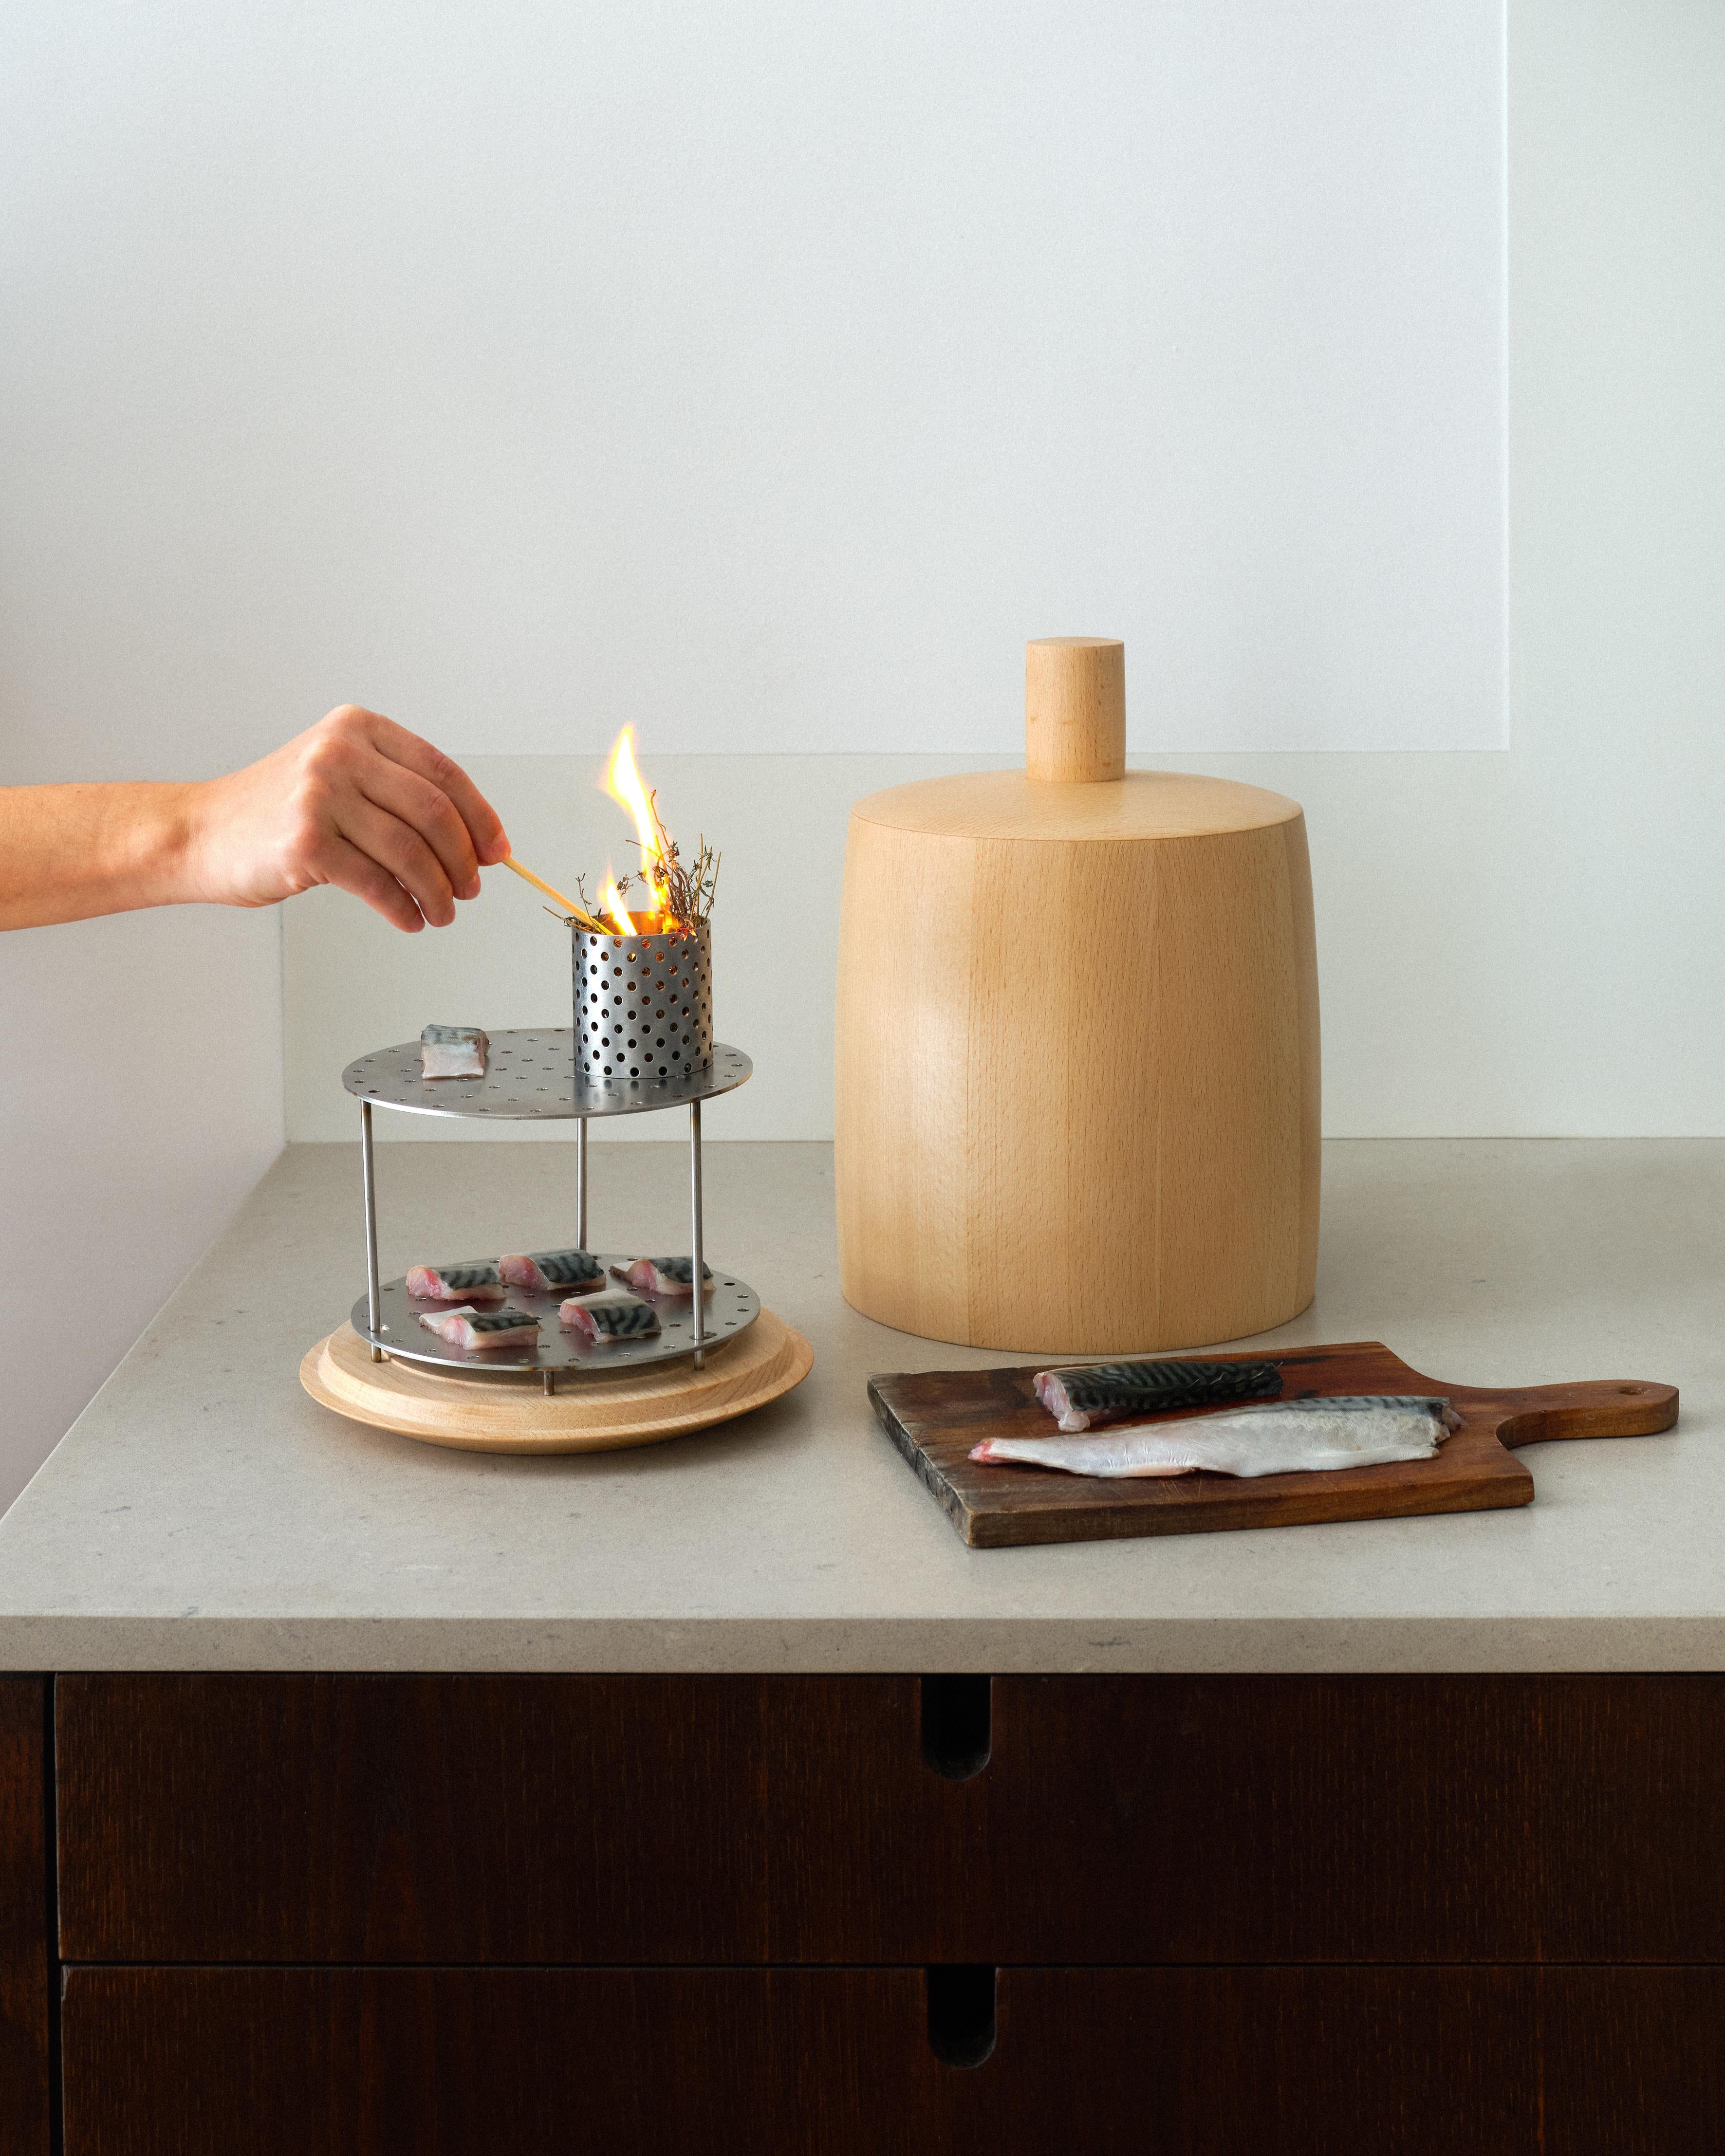 CLOCHE ist ein vom Designer Guillaume Bloget entworfener Tischräucherschrank zum Kalträuchern von Speisen aus aromatischen Pflanzen oder Holzspänen. Es bewahrt den Eigengeschmack der Lebensmittel und verleiht ihnen eine rauchige Note. 

Die